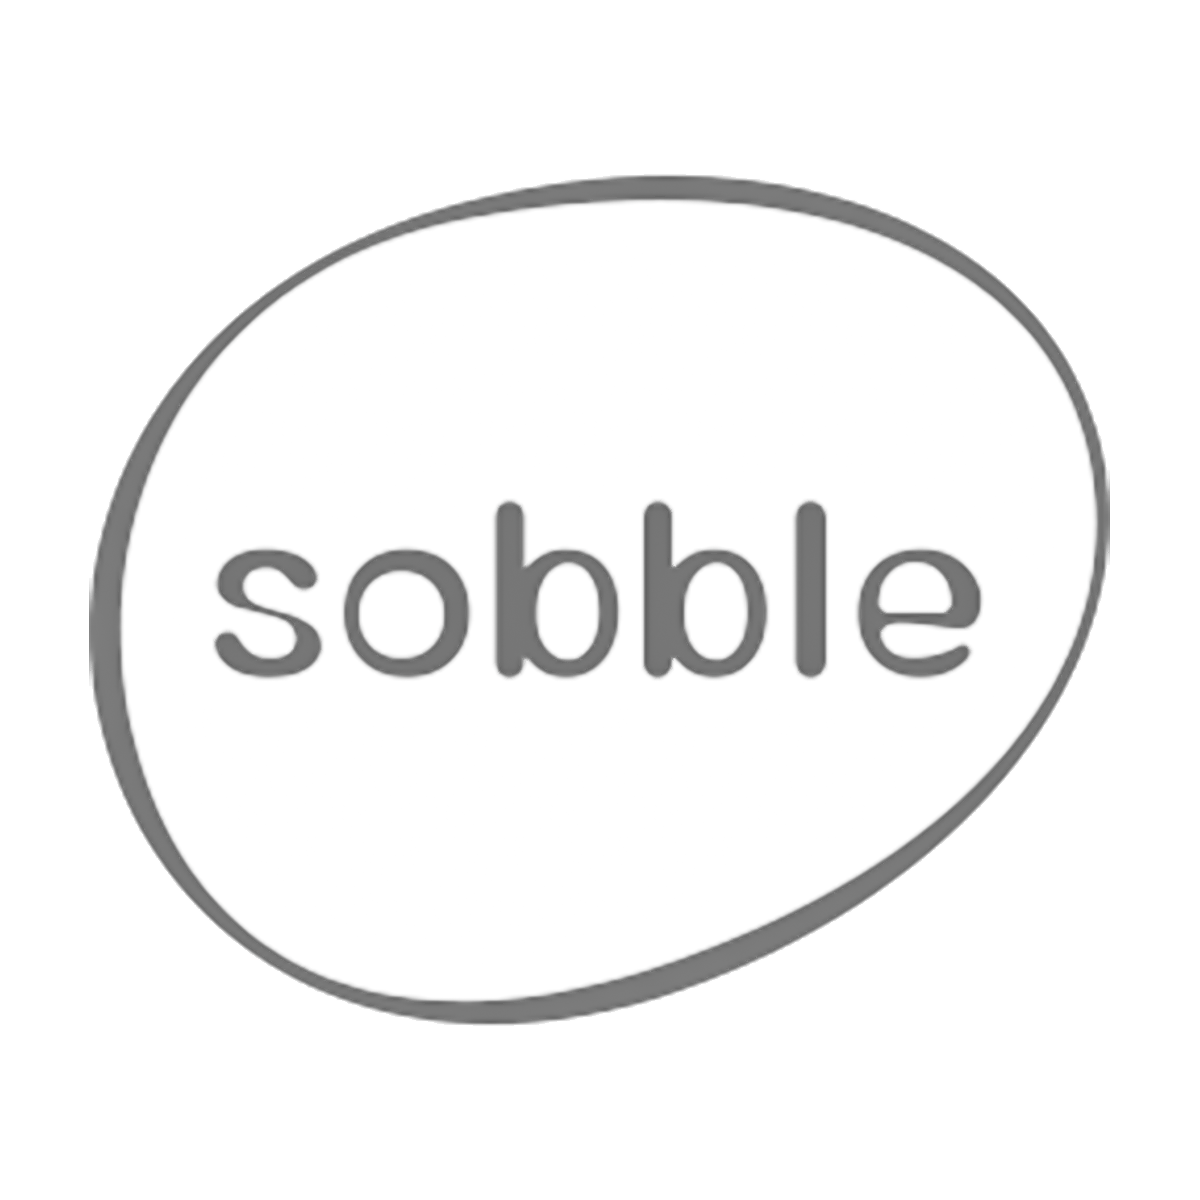 Sobble